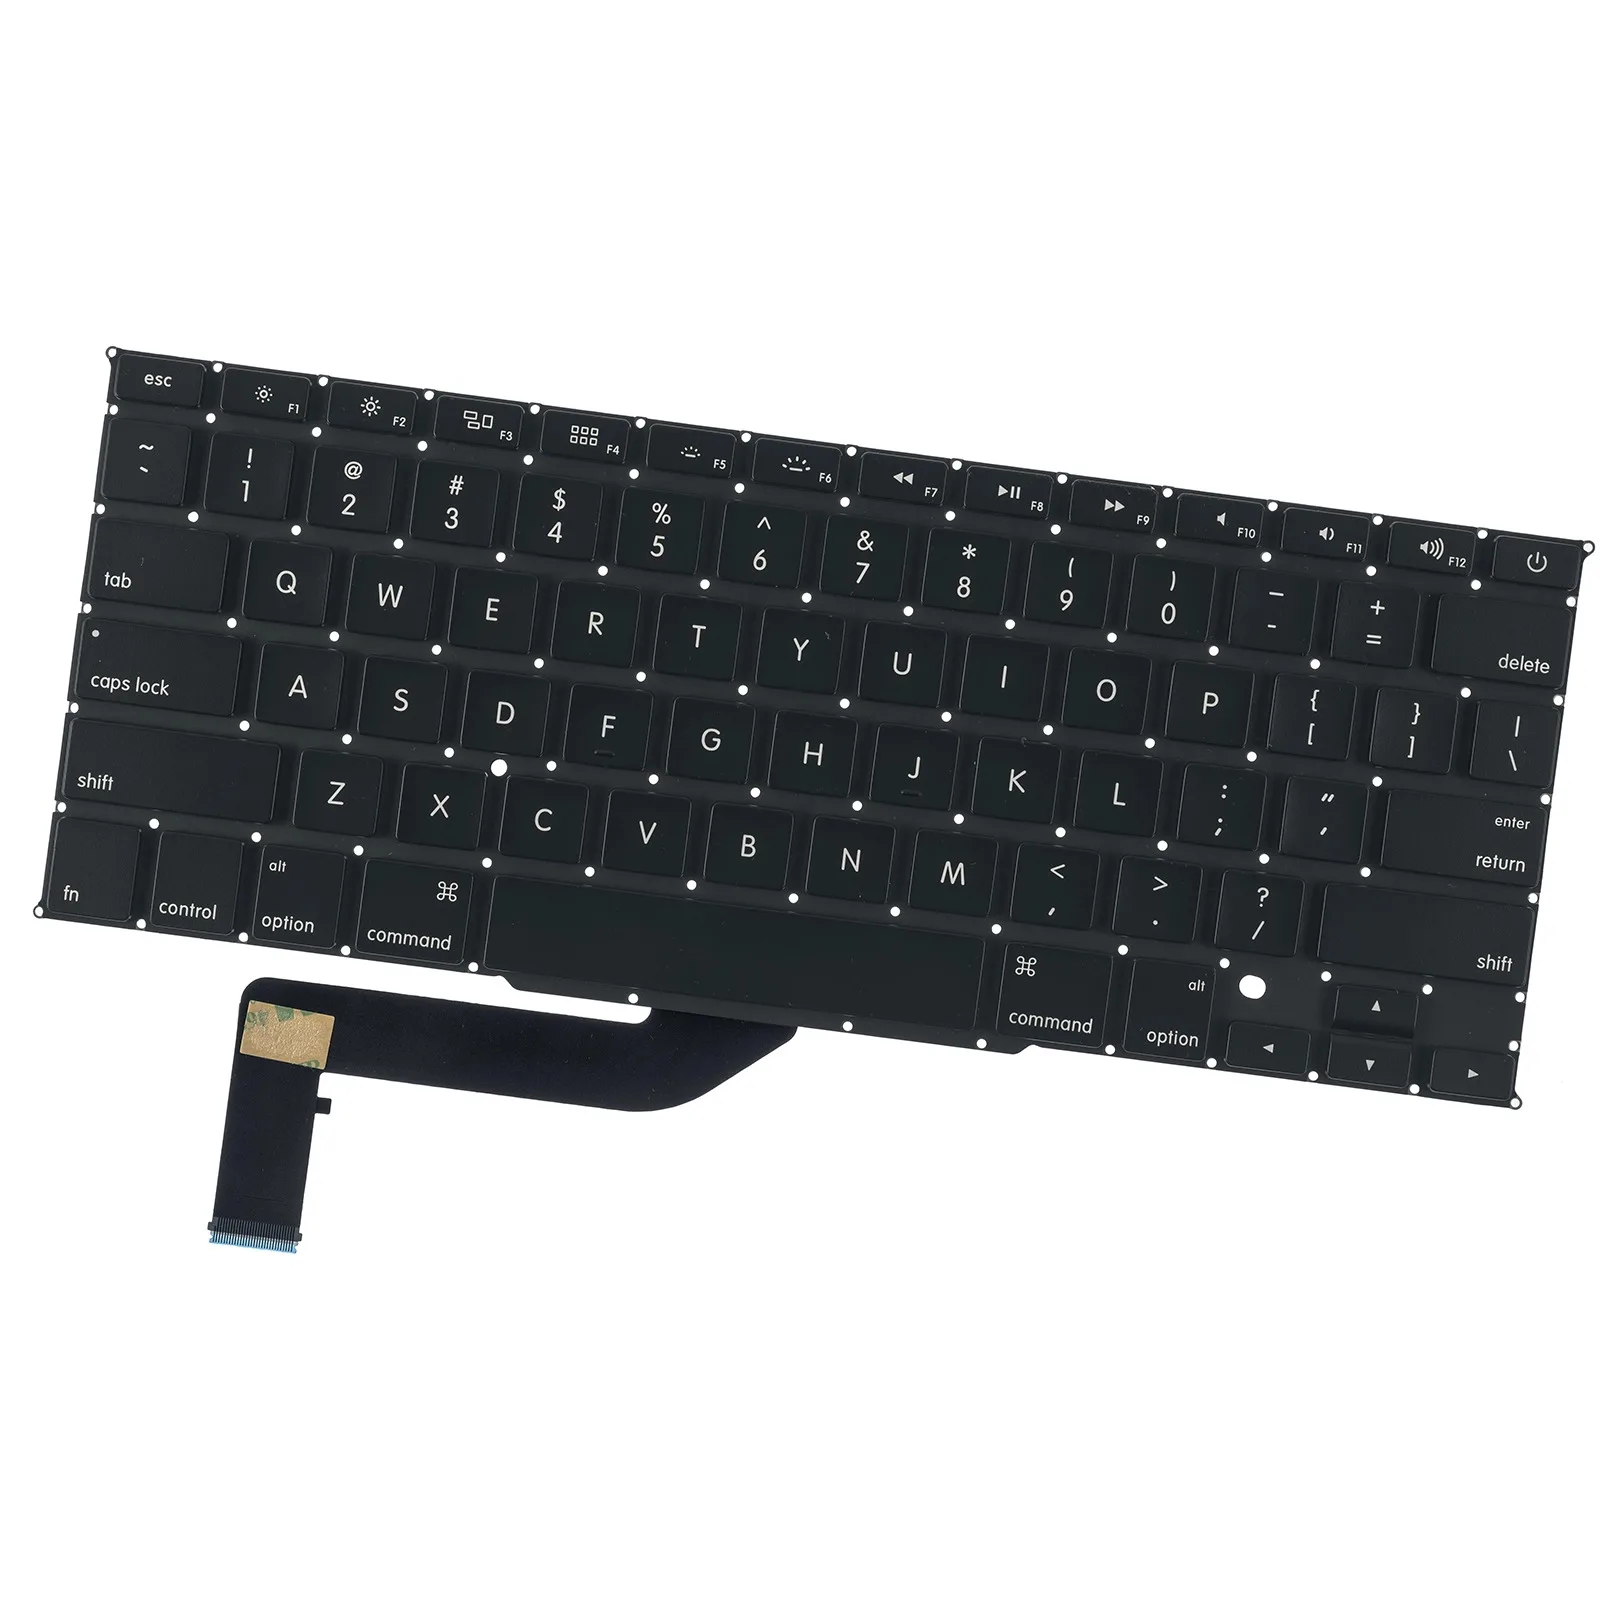 

Новая клавиатура A1398 для ноутбука Macbook Pro Retina 15,4 дюйма MC975 MC976 ME664 ME665 ME293 ME294 клавиатуры, новинка 2012-2015